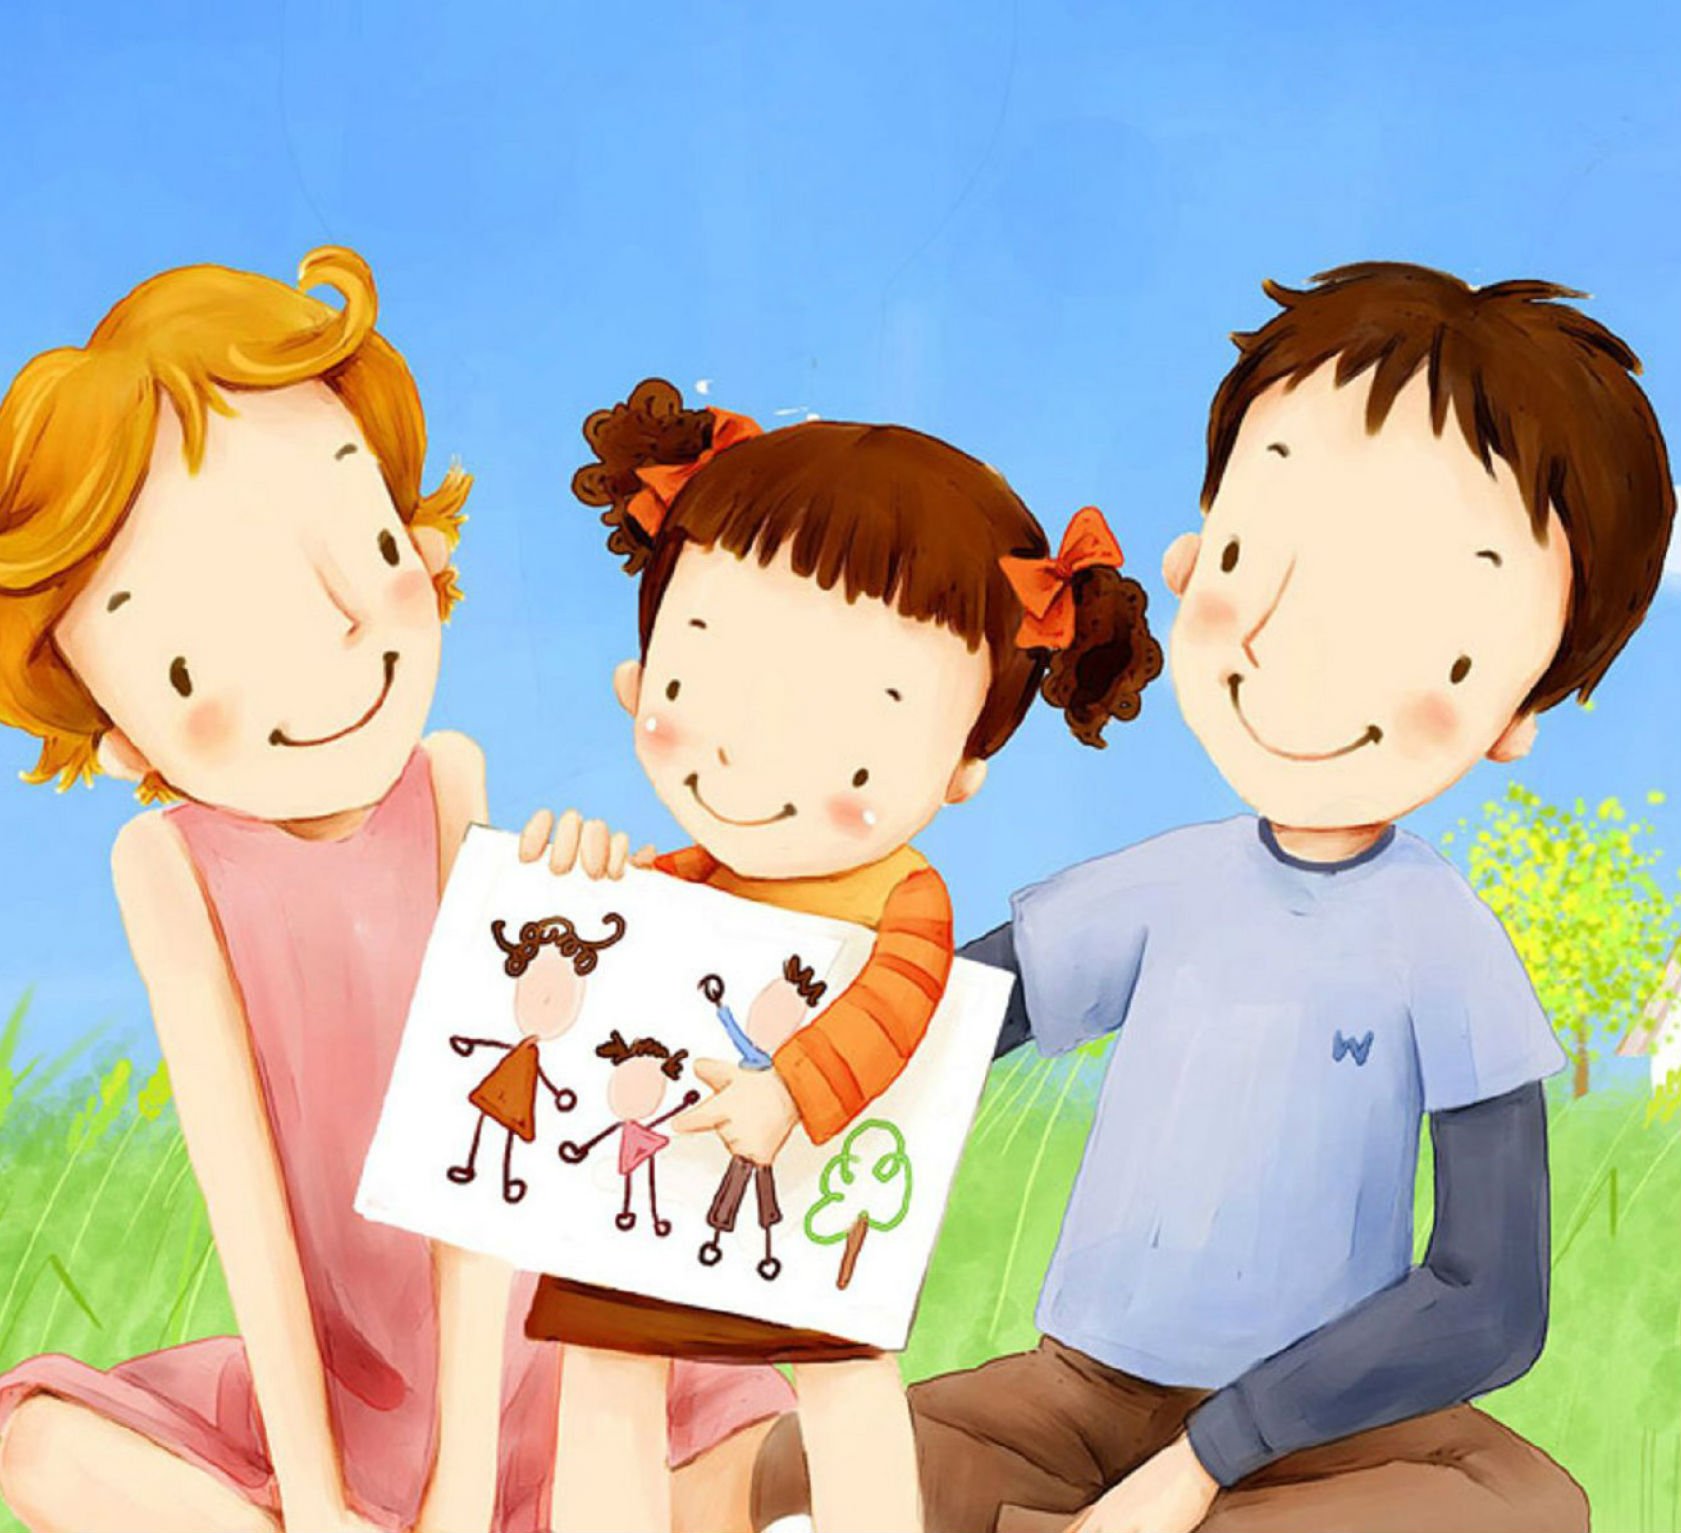 Мама старше папы на 10 лет. Семья рисунок. Иллюстрации с изображением семьи. Родители и дети. Родители и дети картинки.